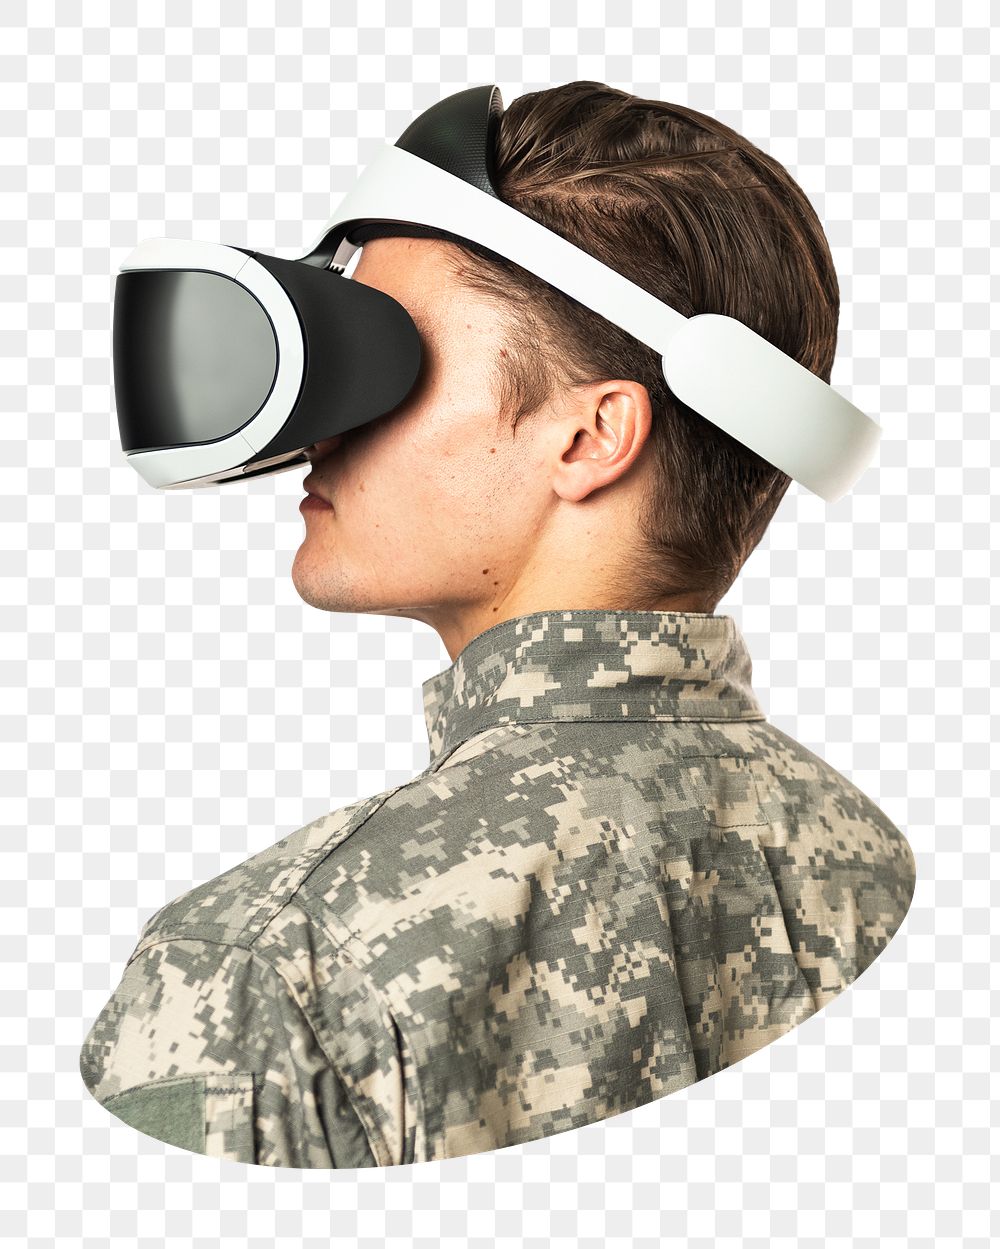 VR headset png man sticker, transparent background